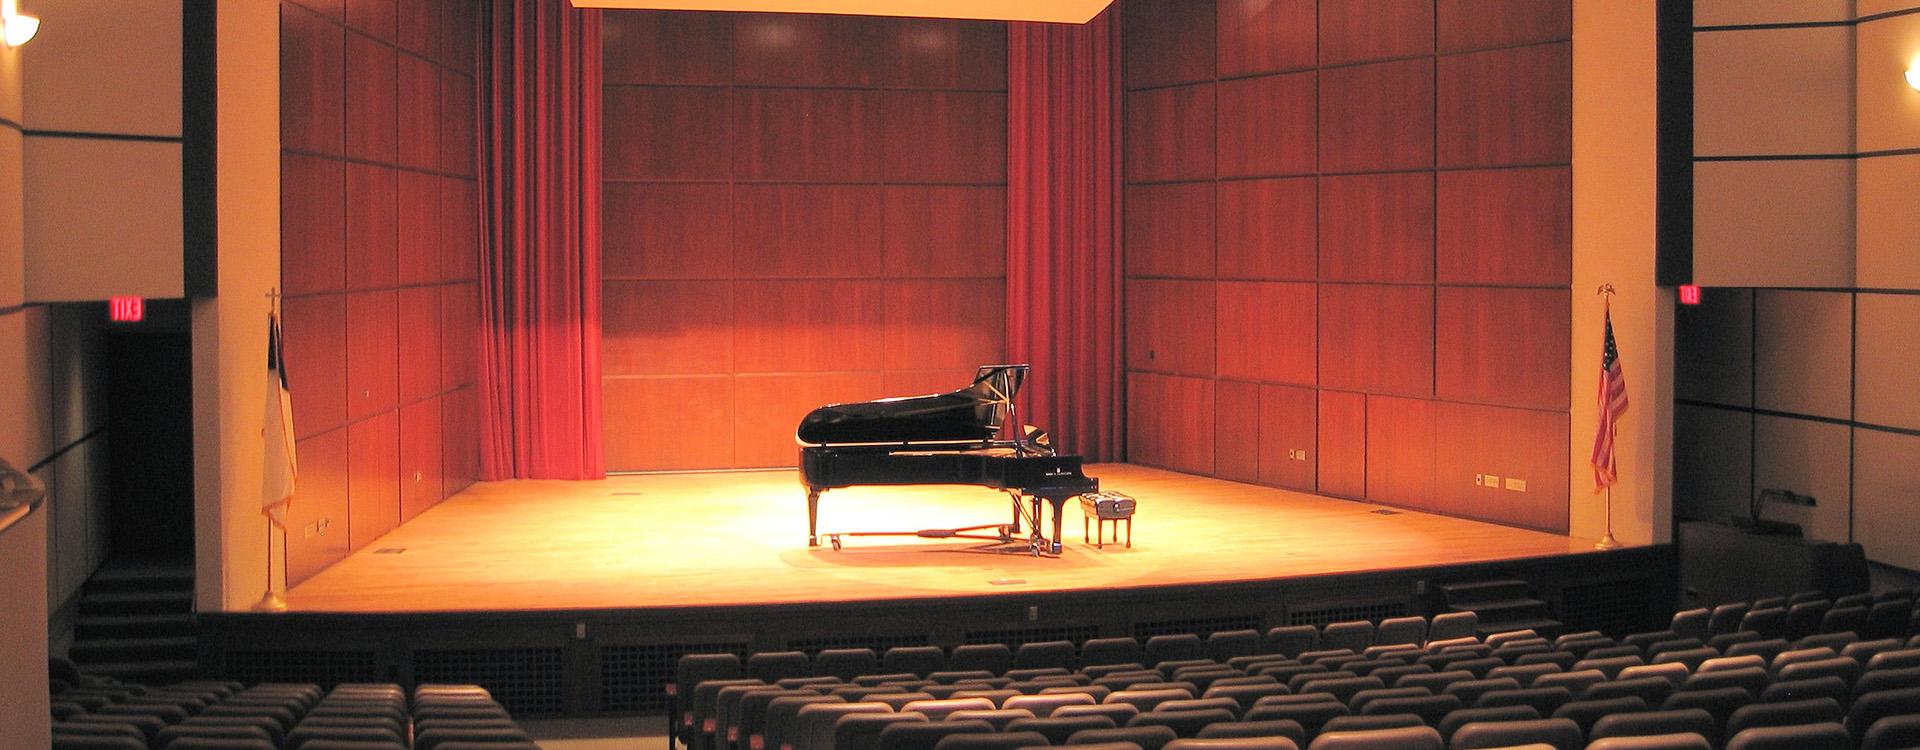 施旺音乐厅舞台上有钢琴